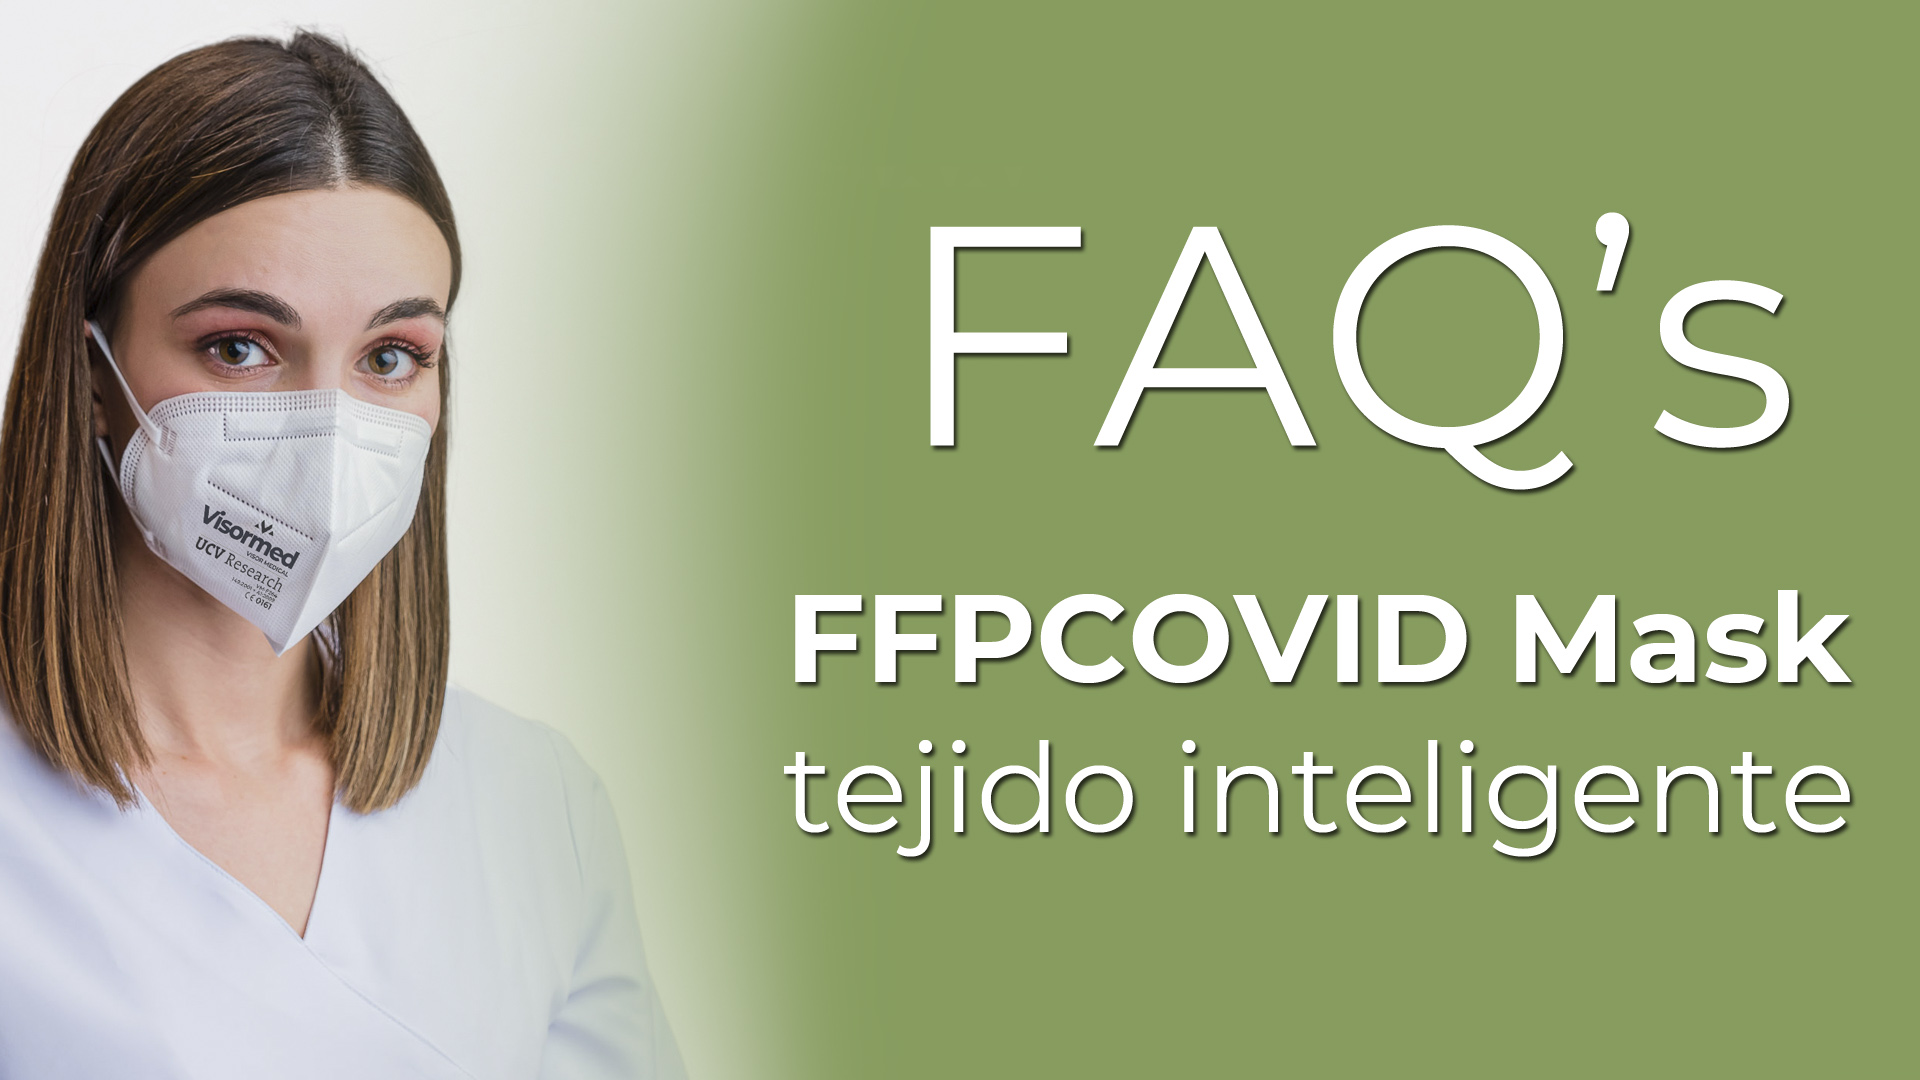 FFPCOVID Mask con tejido inteligente: FAQ's